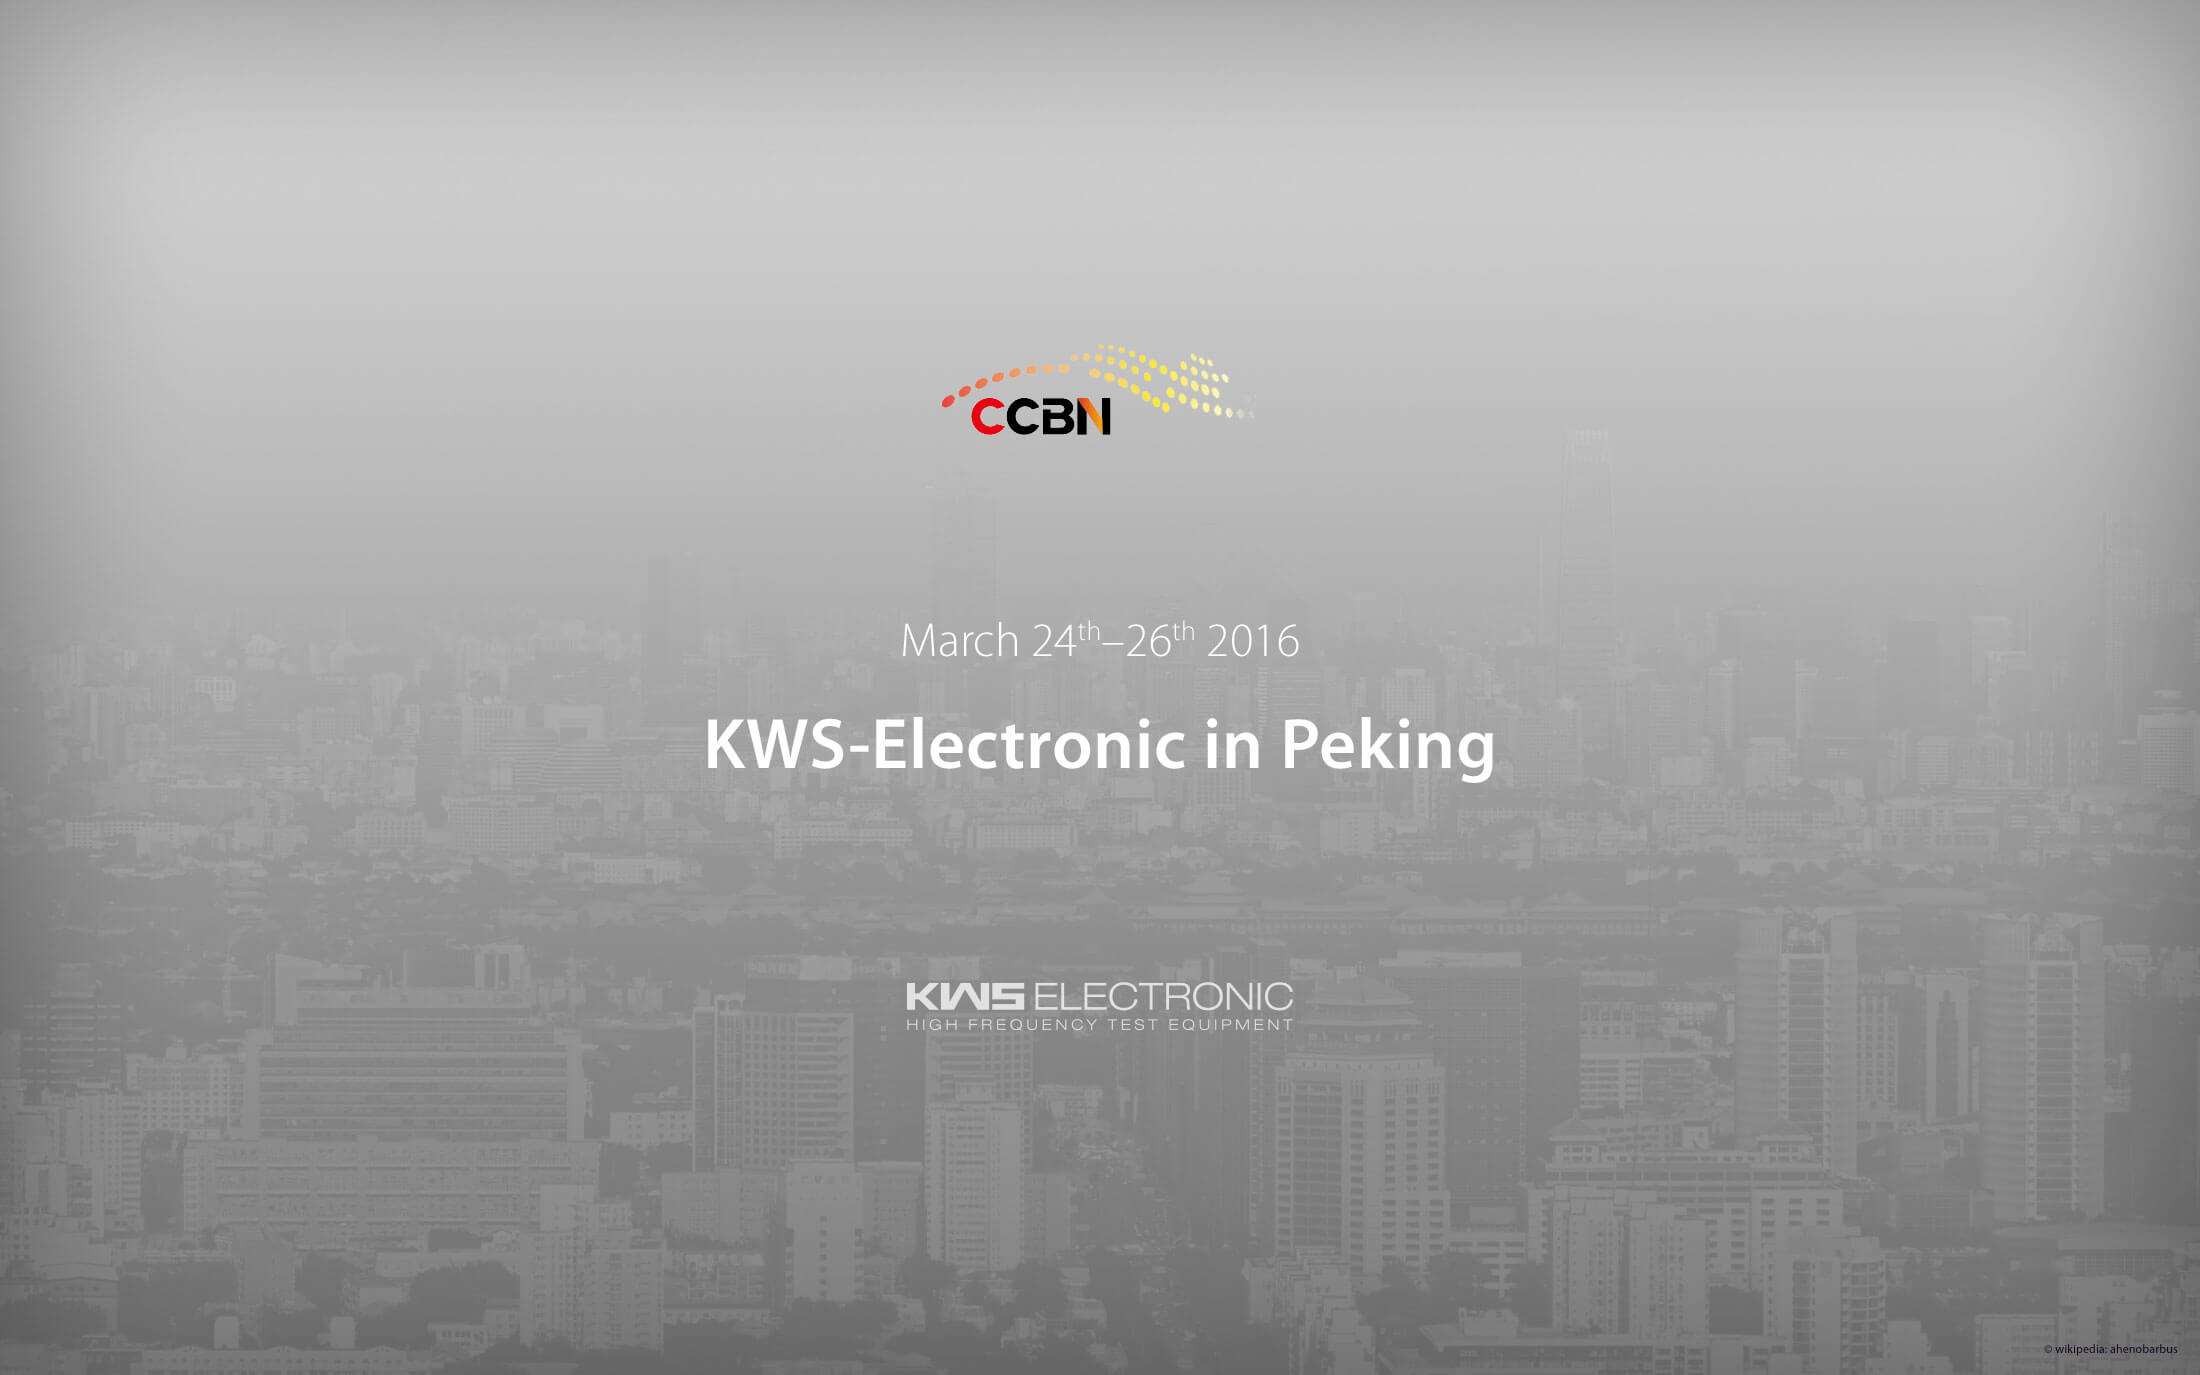 KWS Electronic at CCBN 2016 in Peking